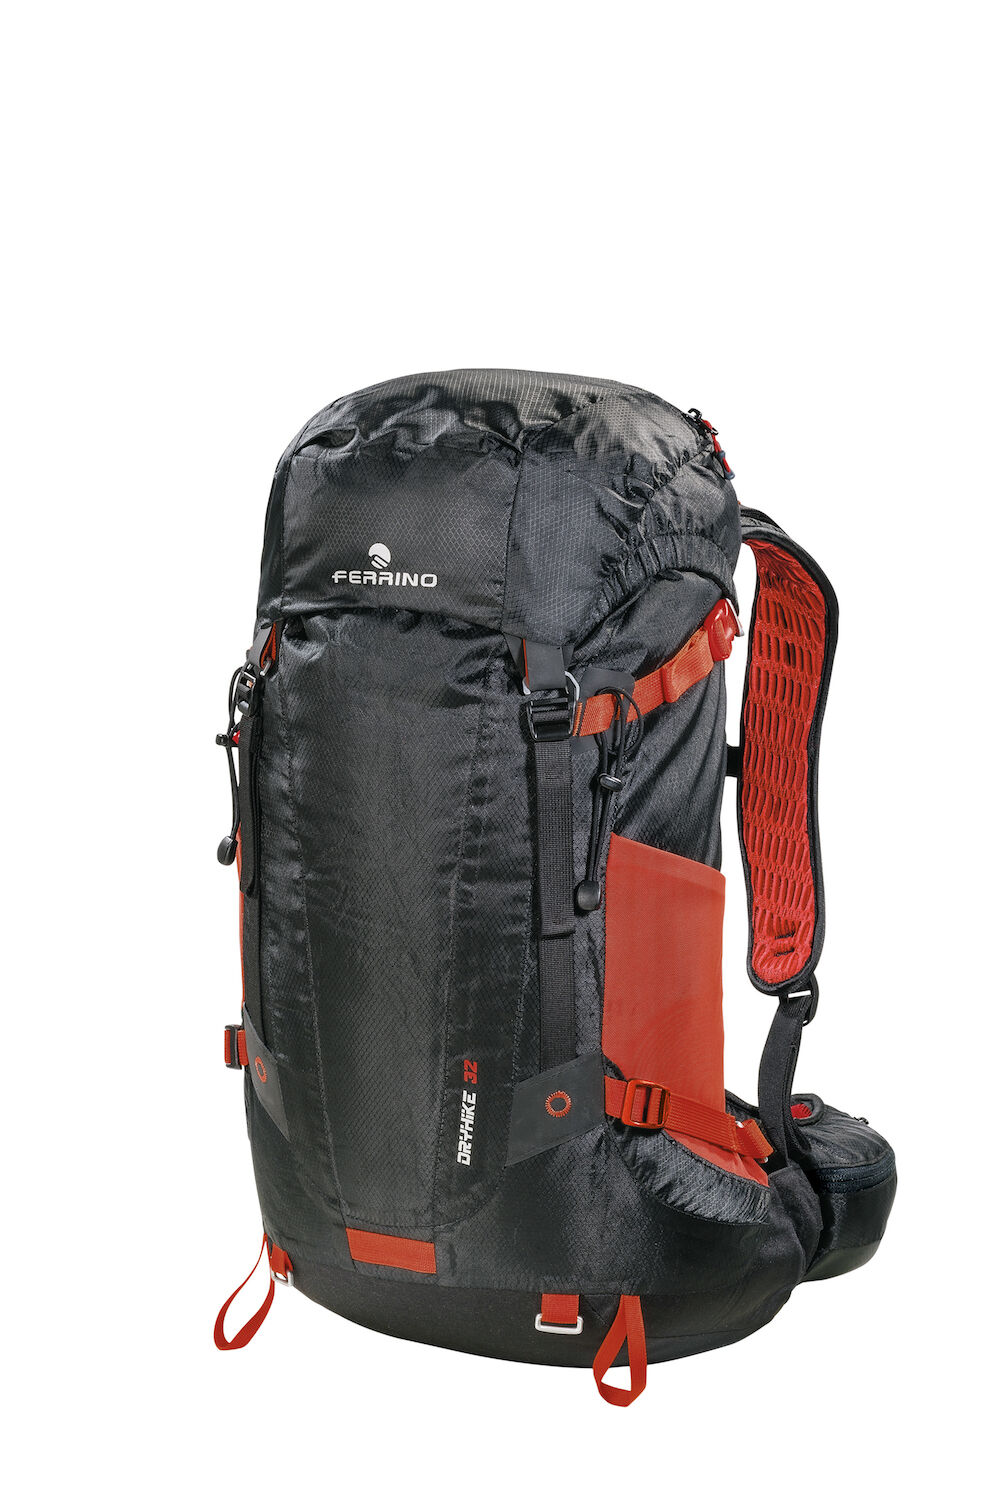 Ferrino Dry Hike 32 - Hiking backpack